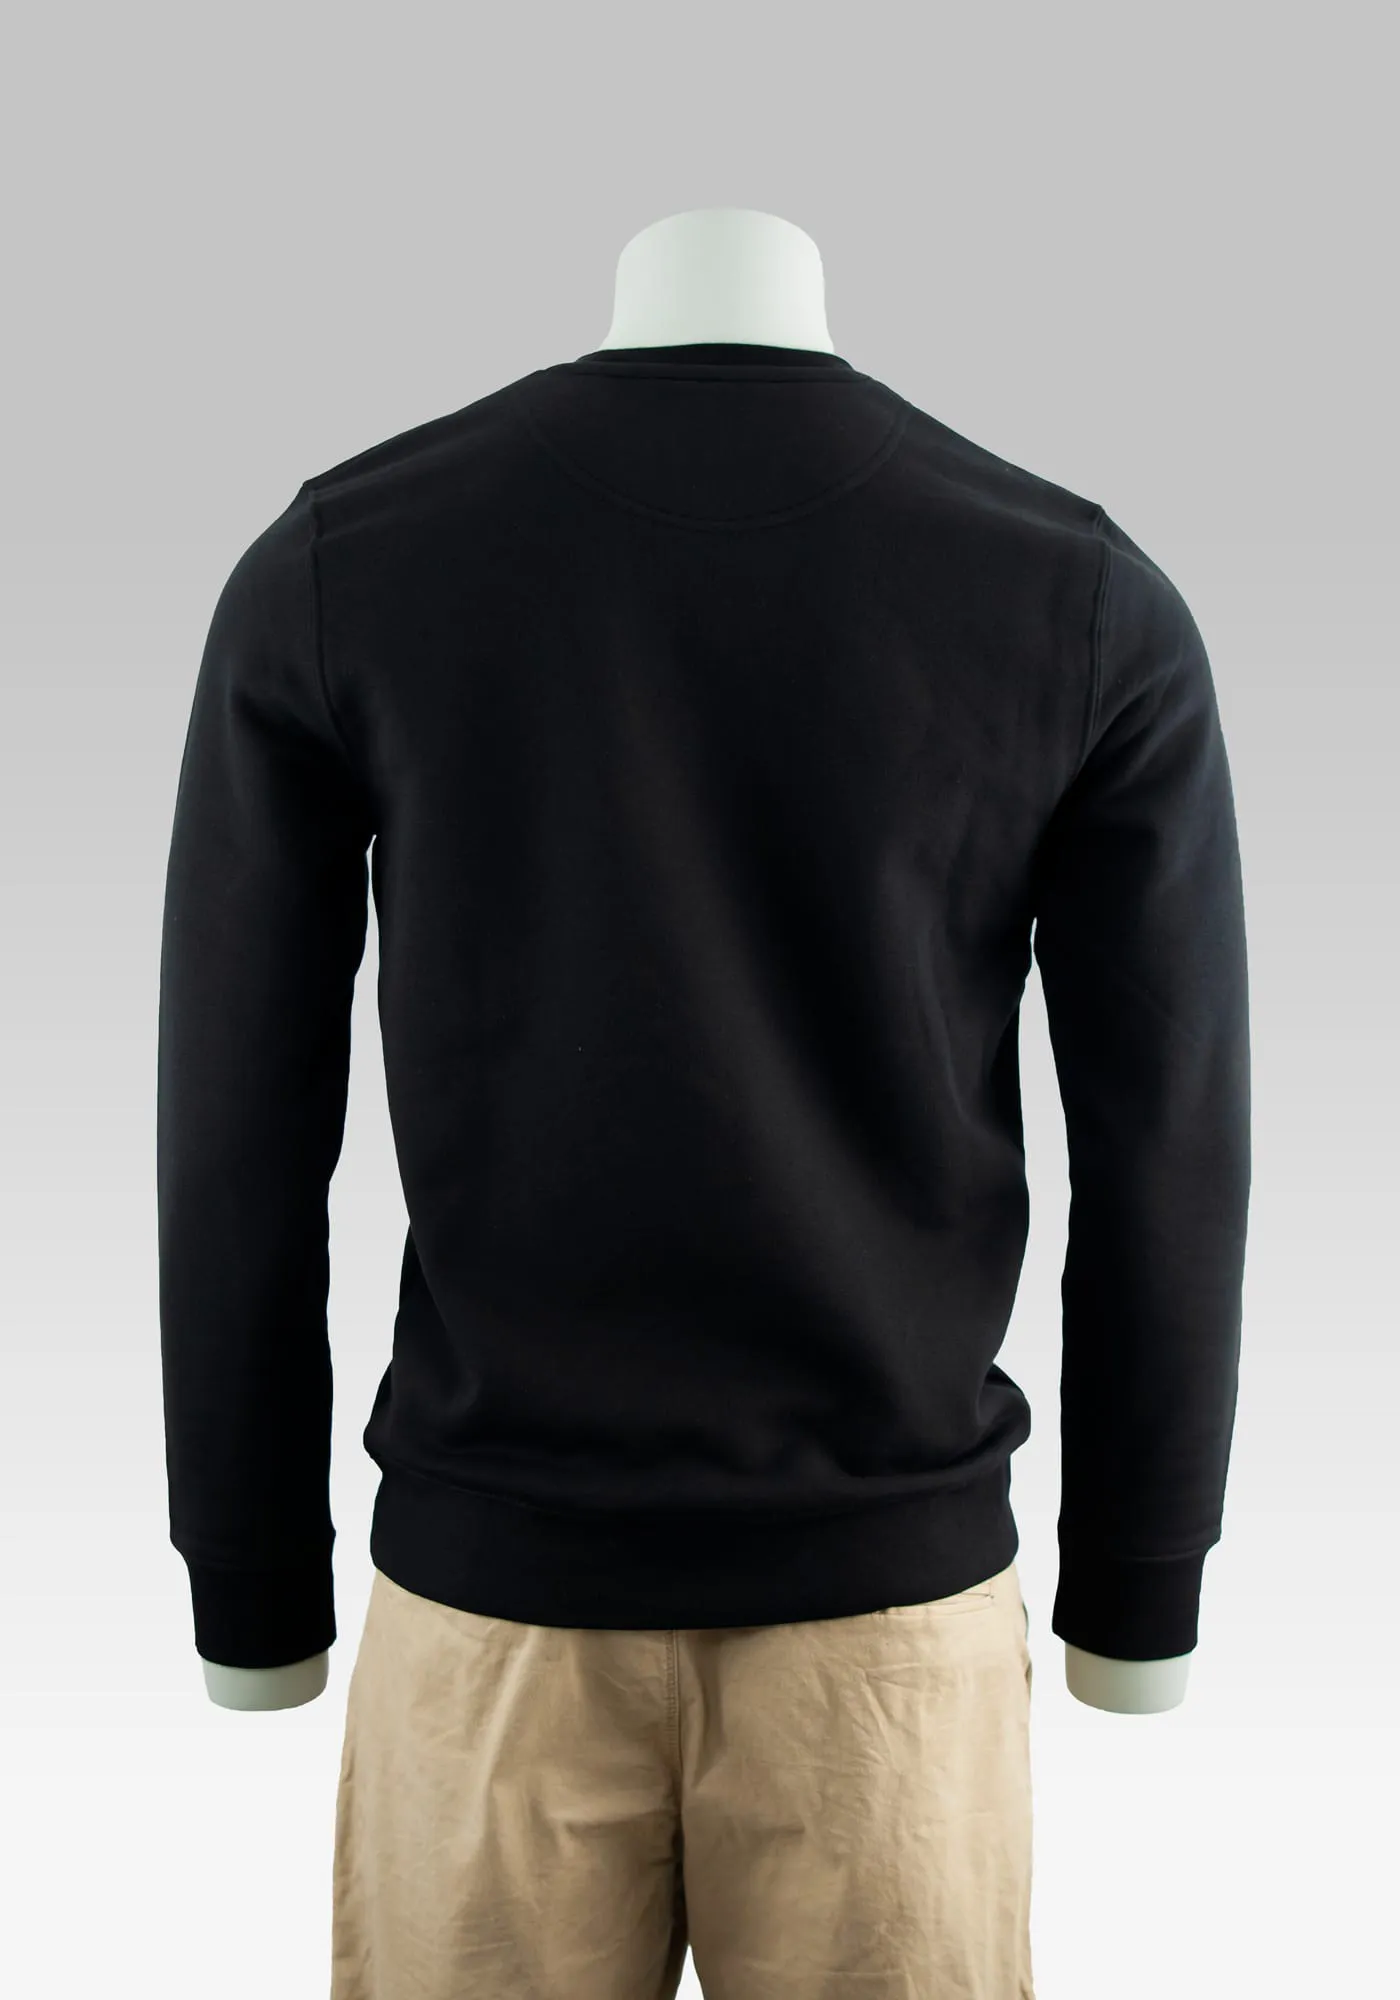 Comic Sweater Hitman auf der Hollowpuppe in Farbe schwarz in Rückansicht